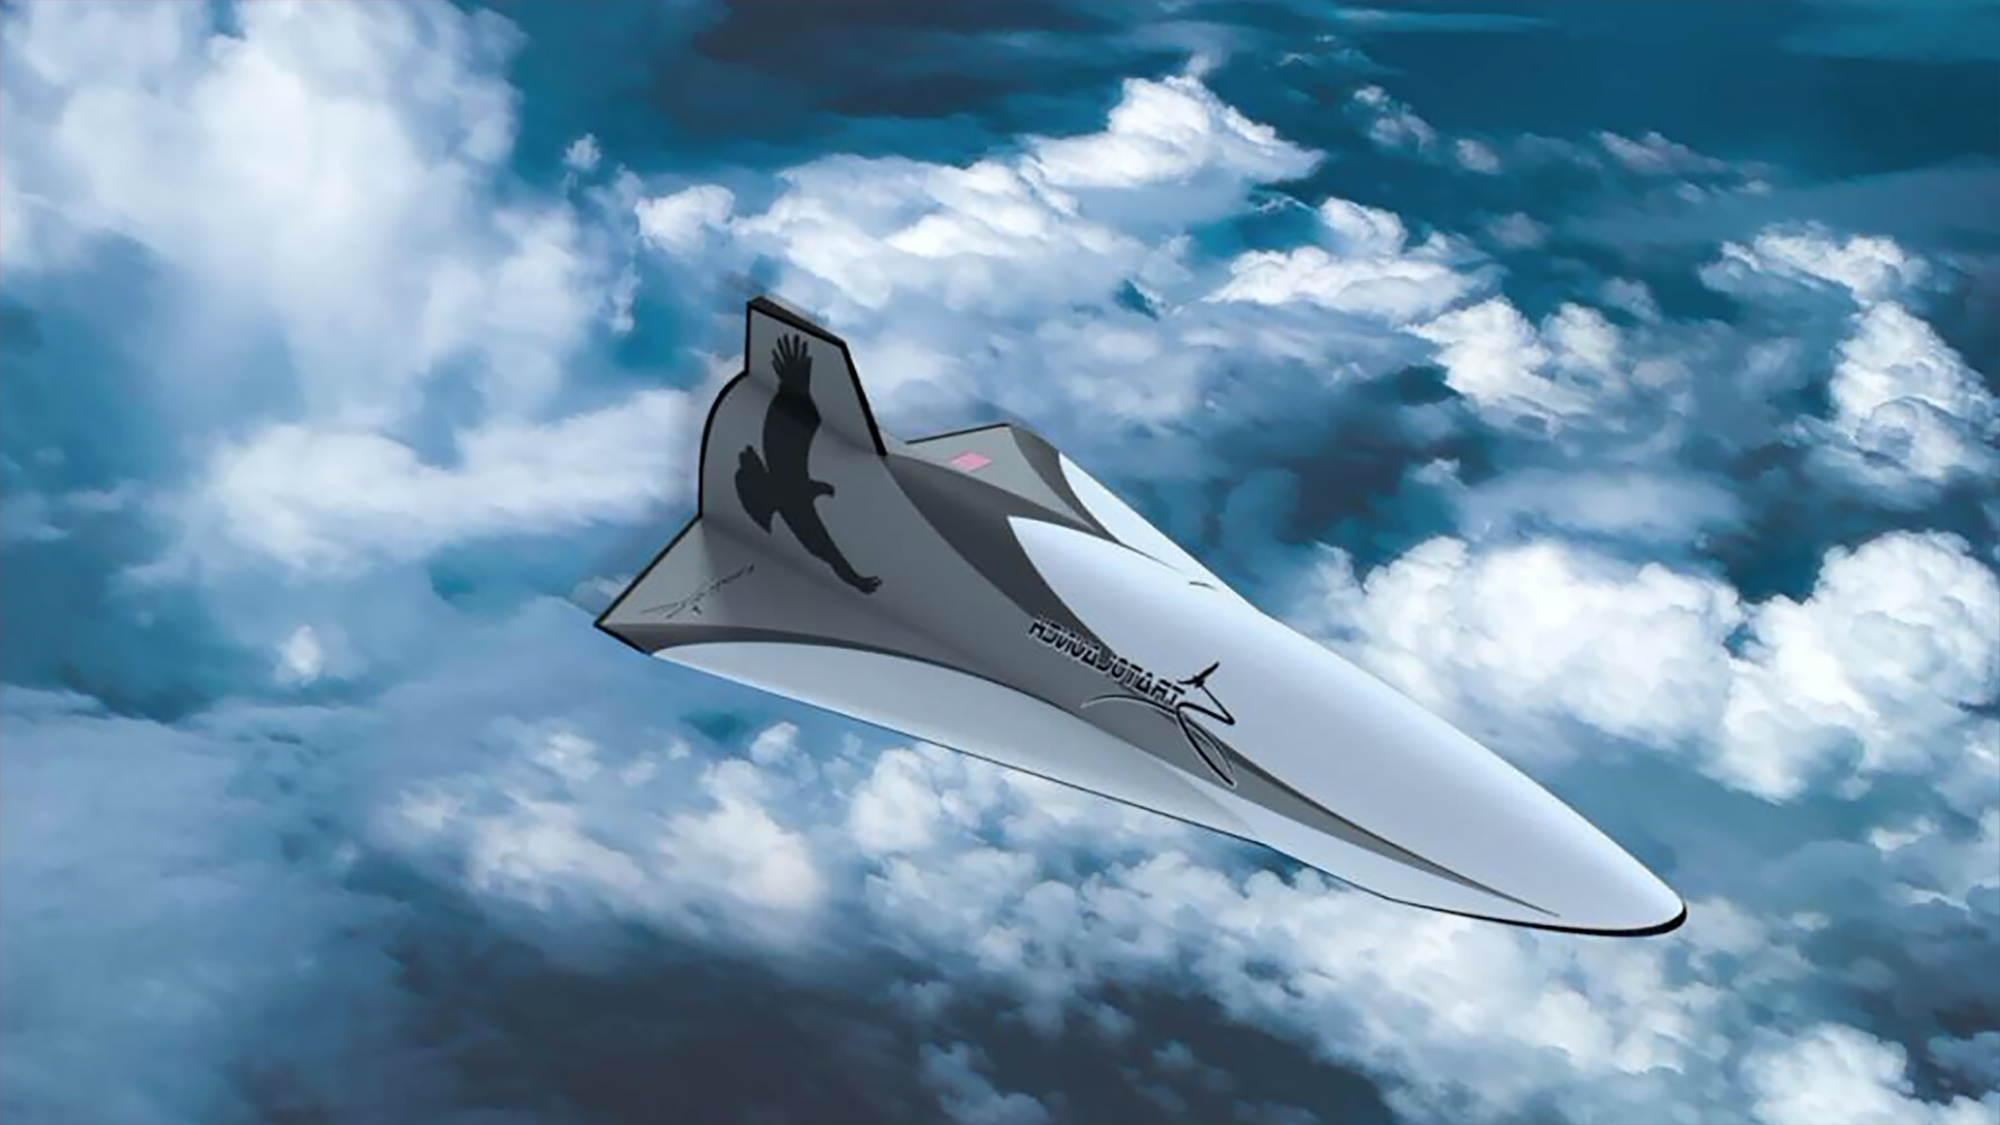 Véhicule de test hypersonique Talon-A. © Stratolaunch